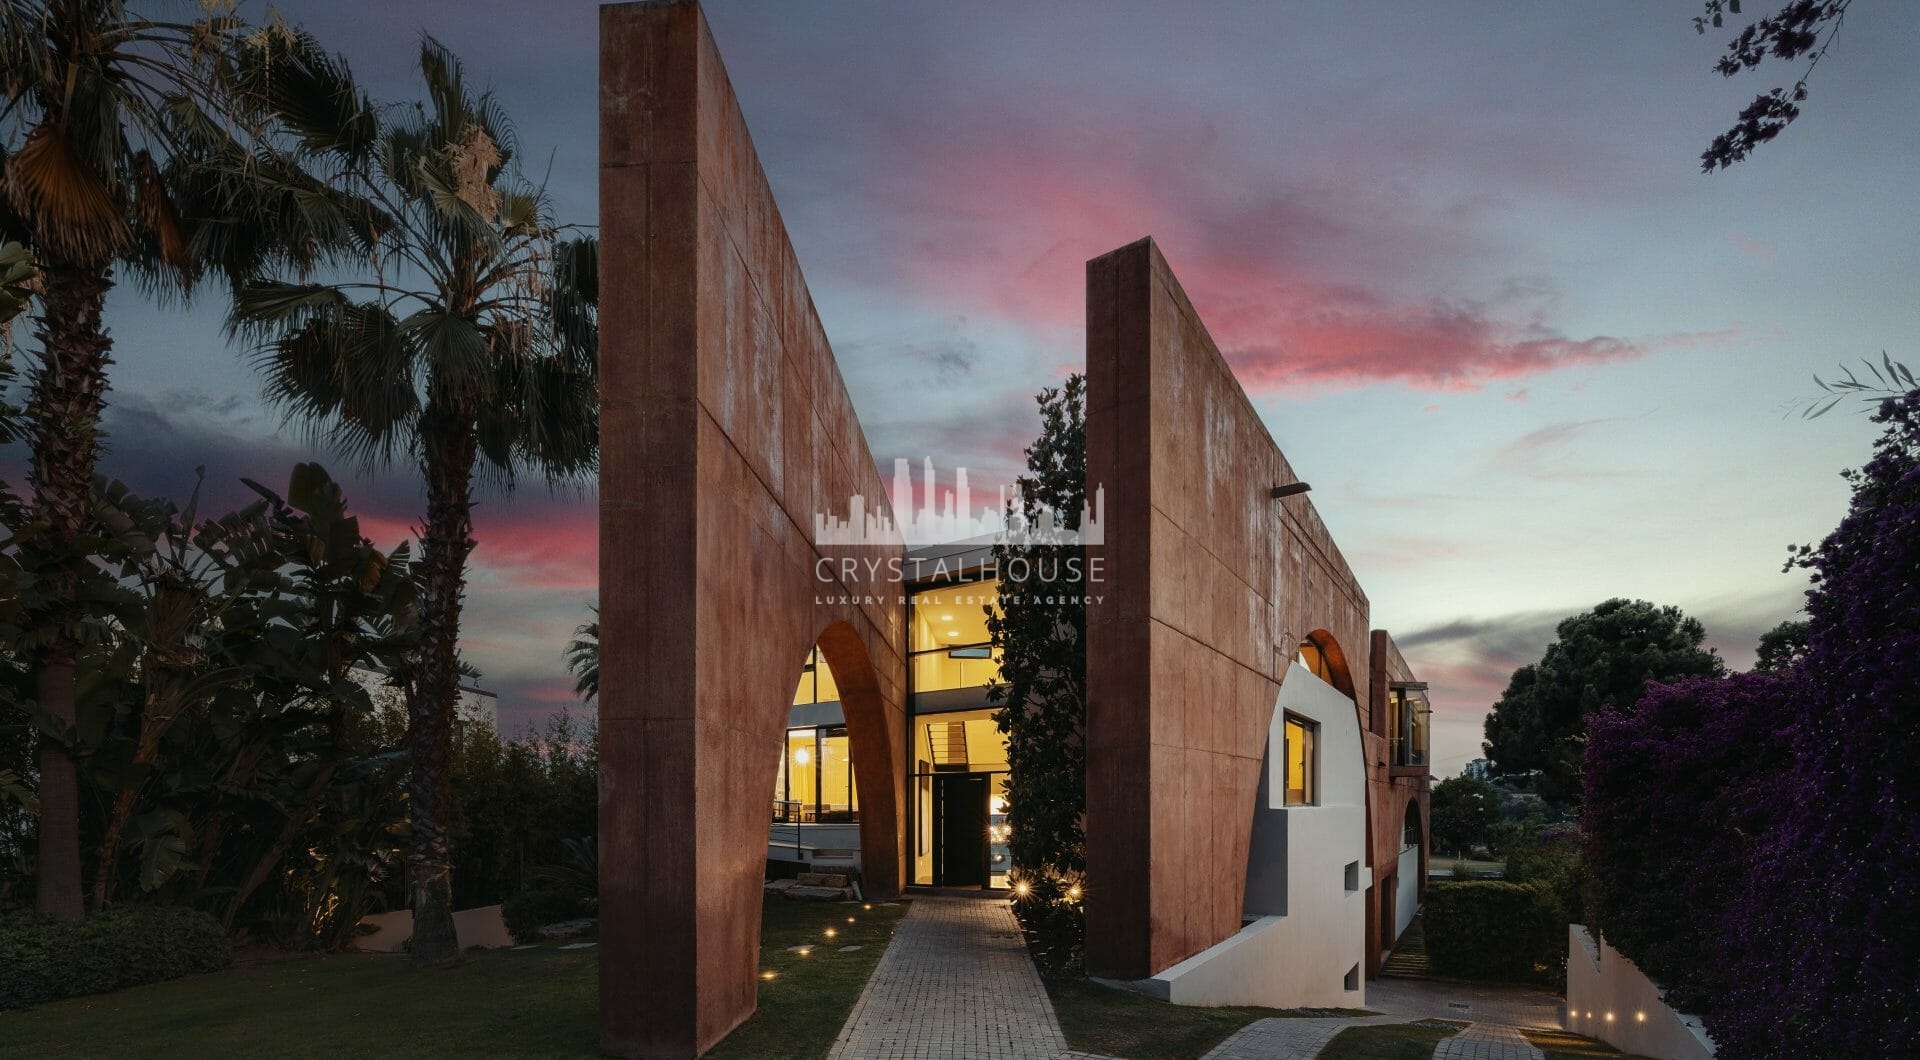 Ten niesamowity dom z 8 sypialniami o progresywnej koncepcji jest na sprzedaż w spektakularnej La Reserva de Alcuzcuz, Benahavis, w fałdach zbocza między San Pedro a podnóżem Serranía de Ronda. To bezpieczne, ogrodzone osiedle z wejściem przez punkt kontr